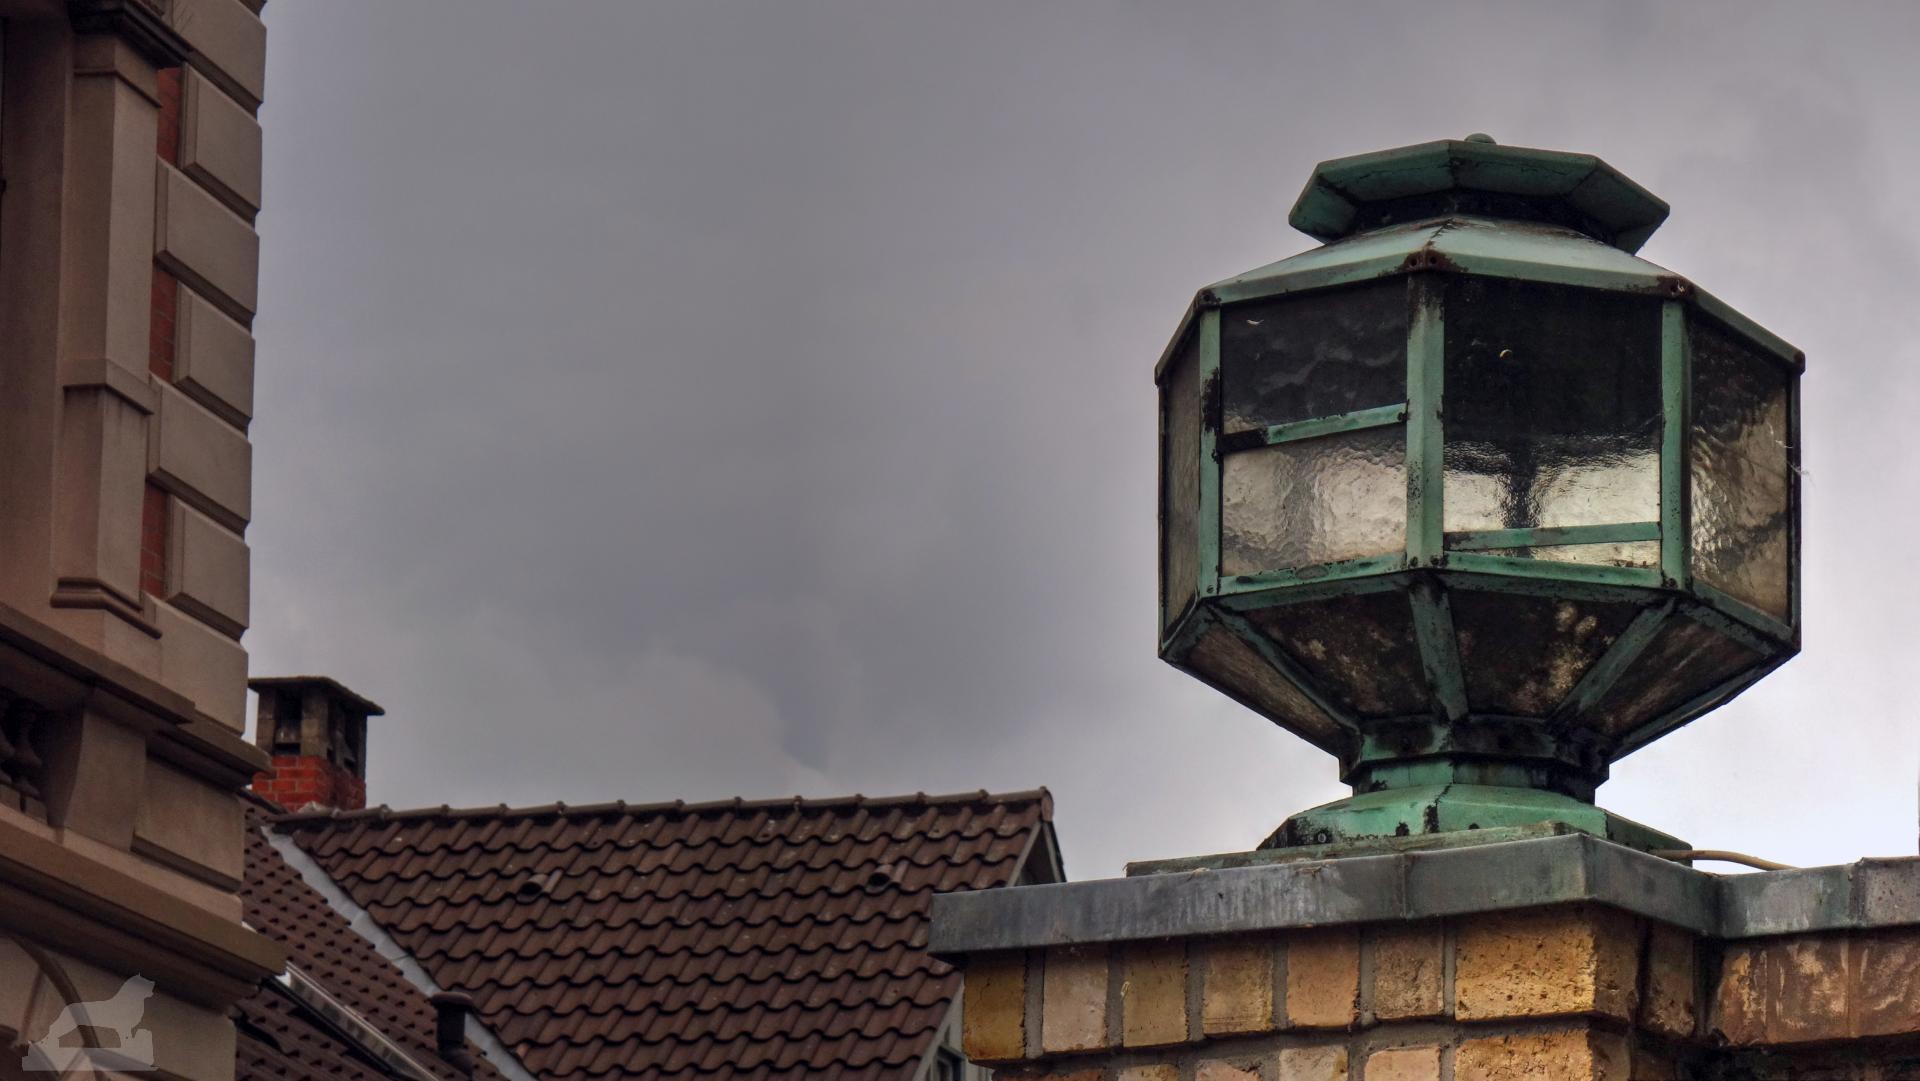 Lampe der ehemaligen Maschinenfabrik Selwig & Lange